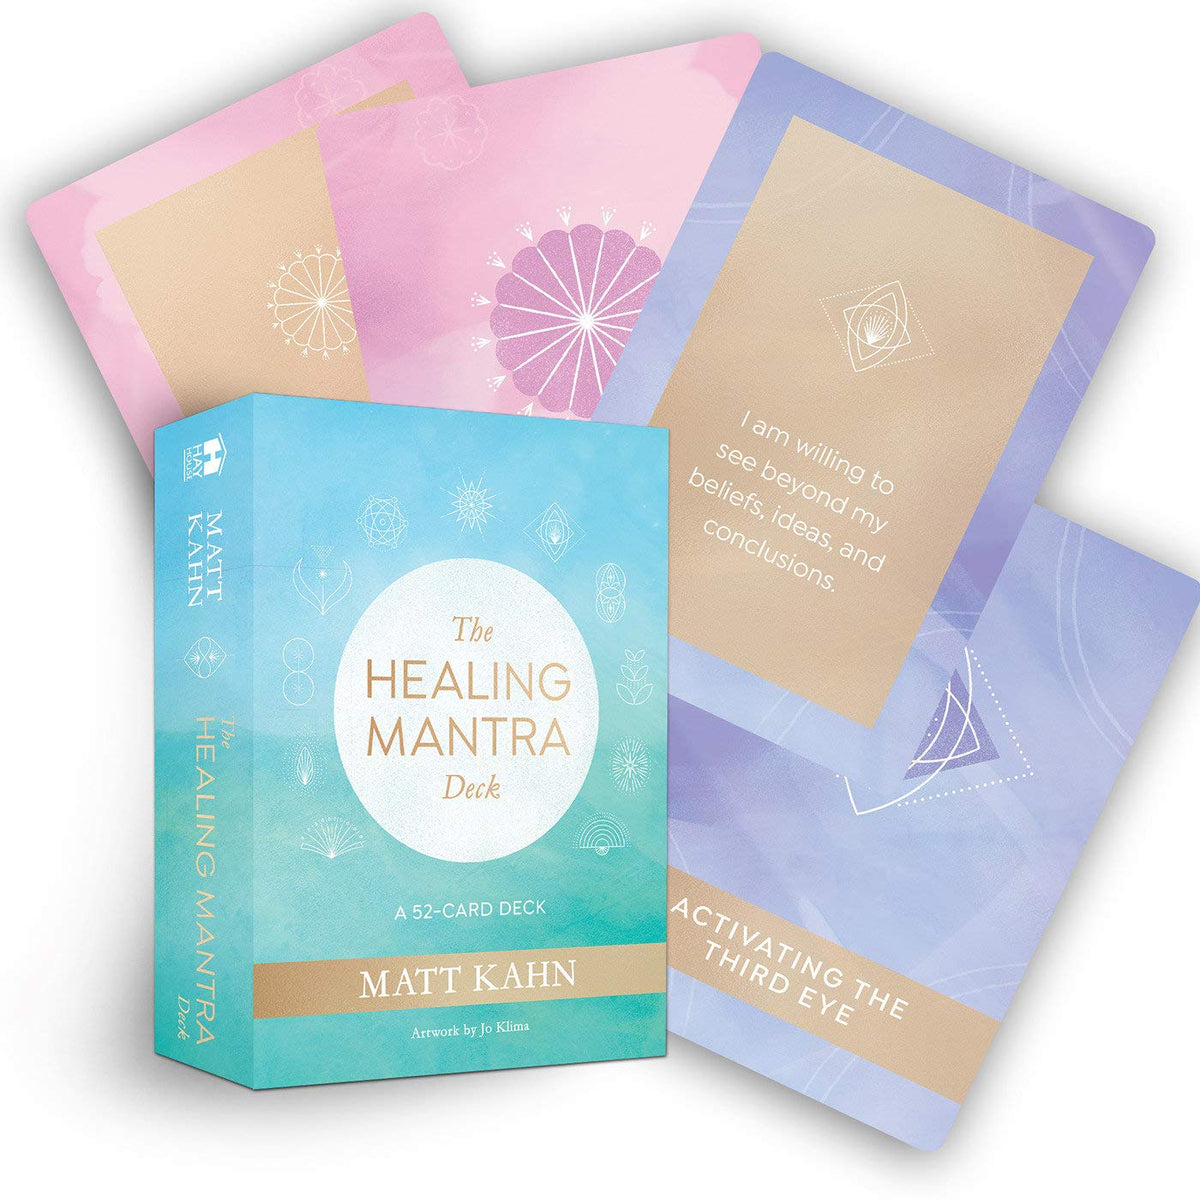 The Healing Mantra Deck: A 52-Card Deck